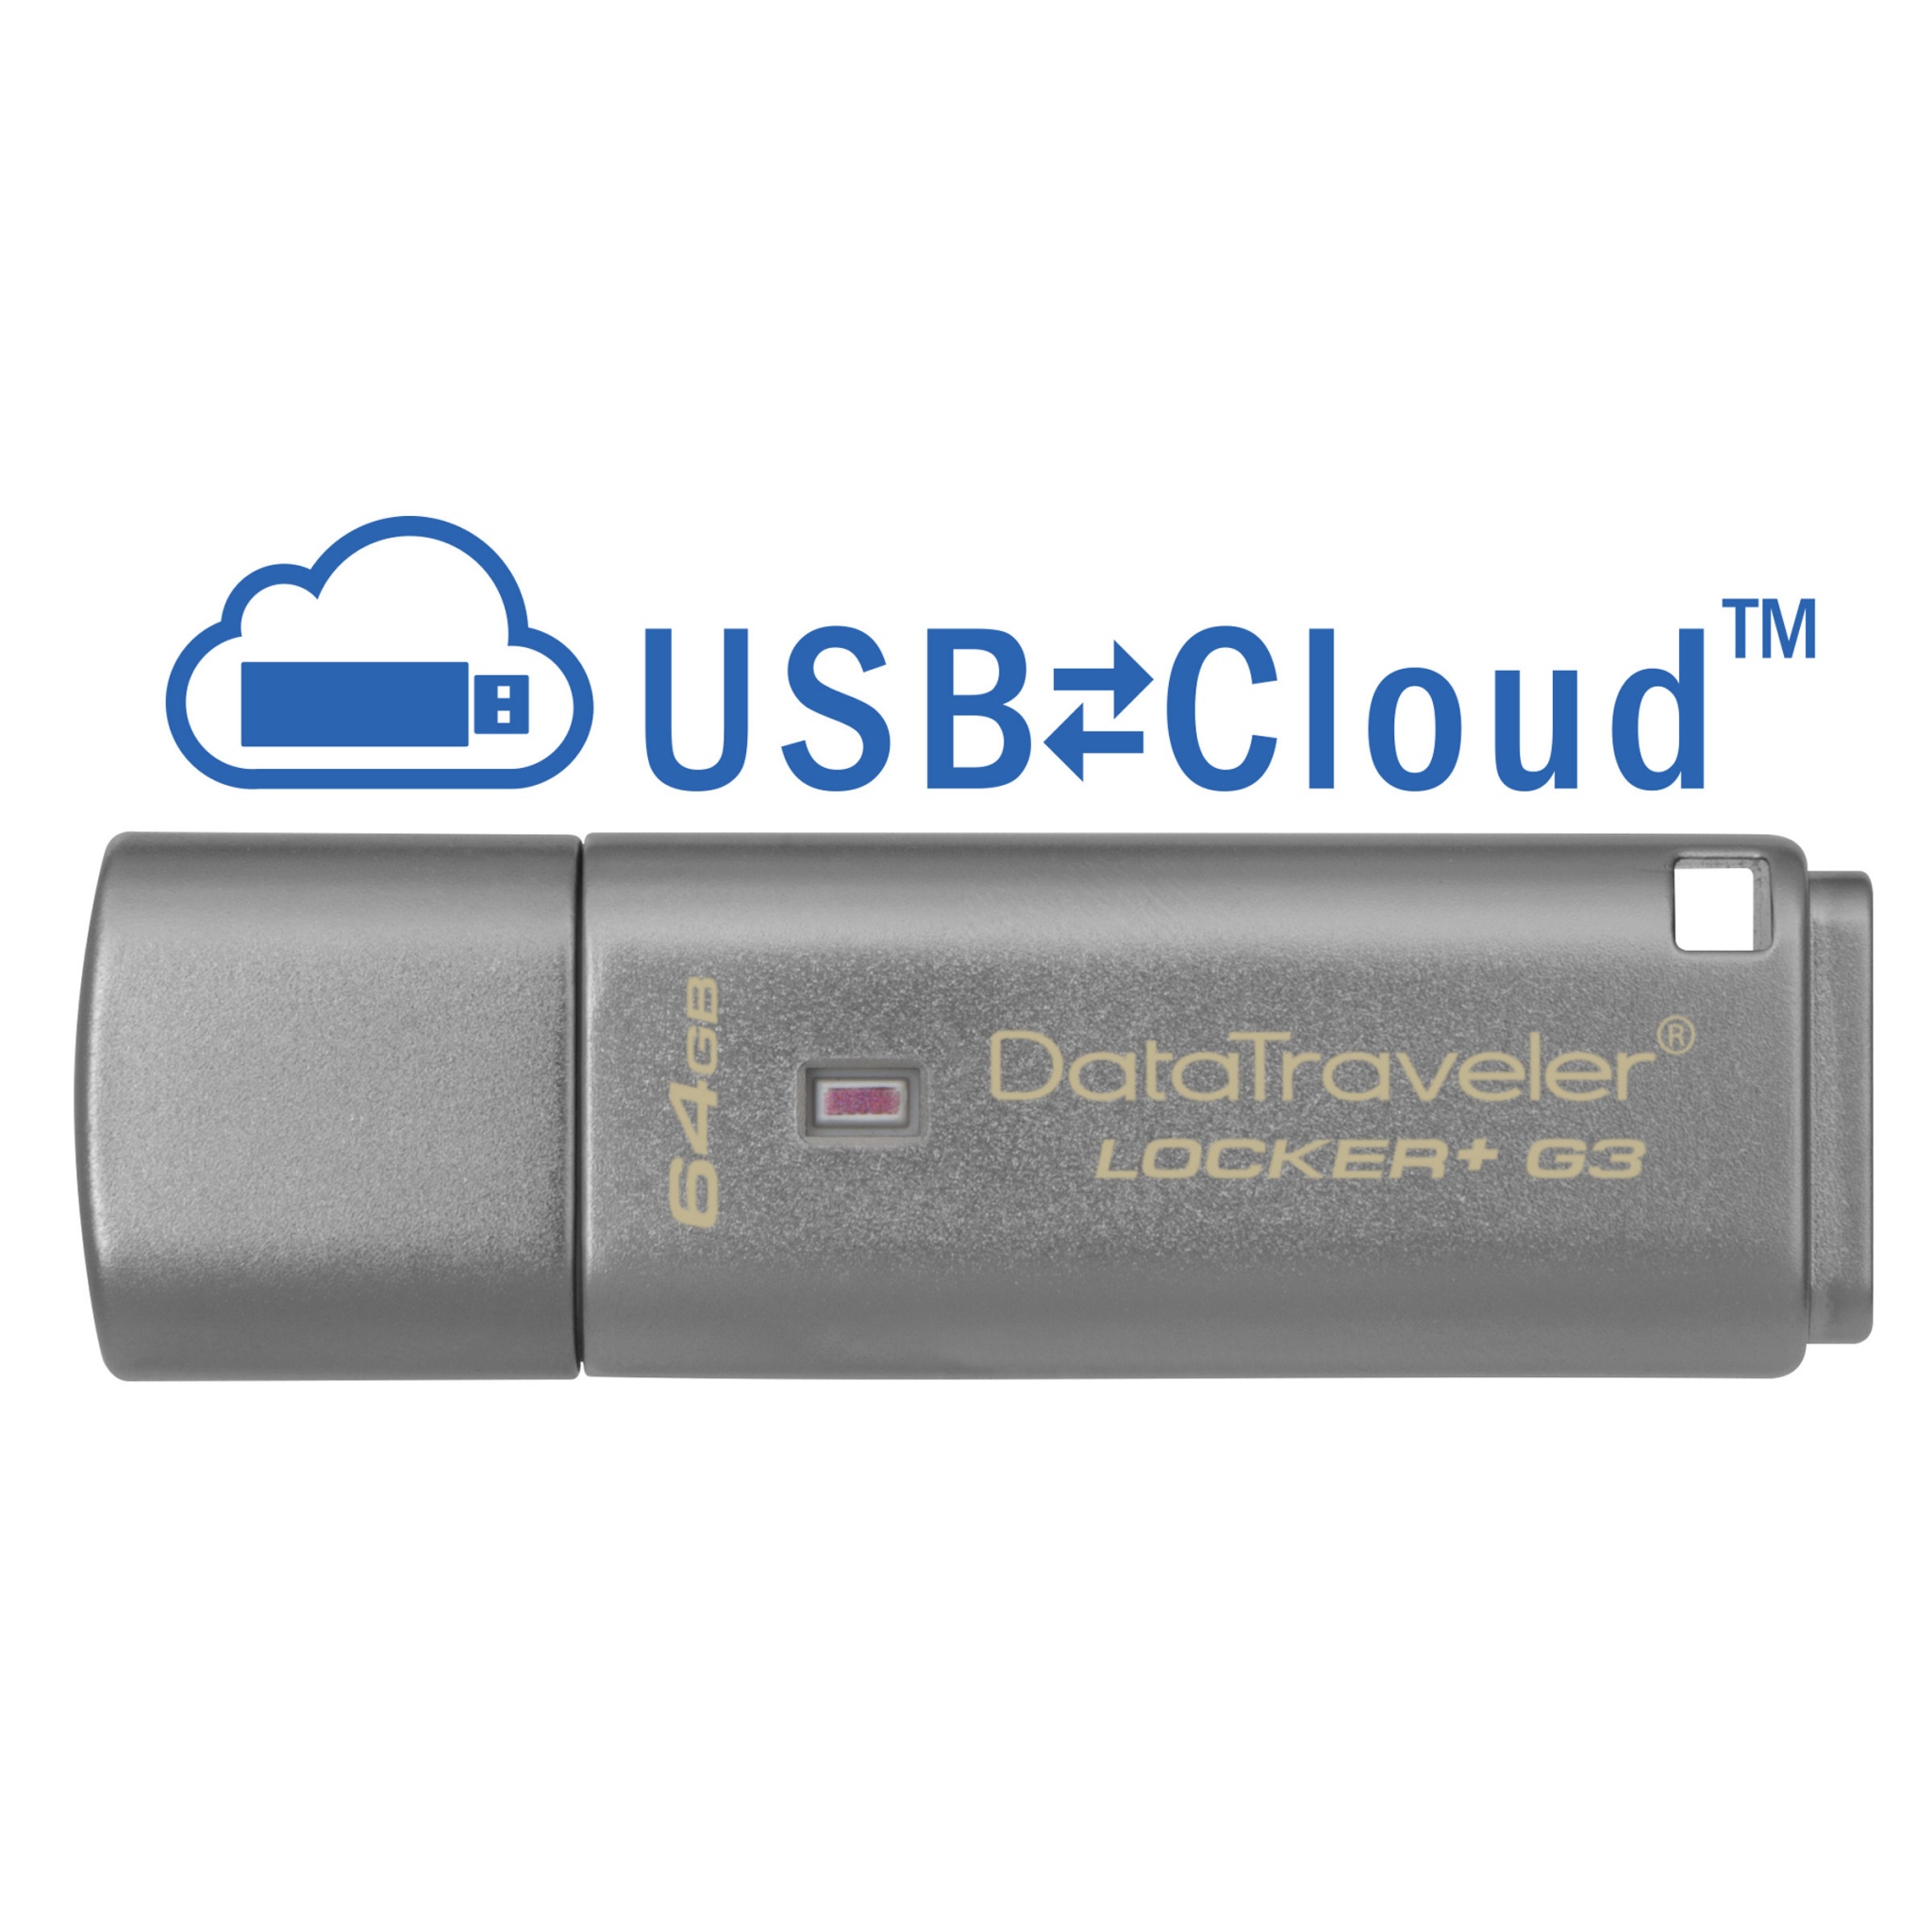 独特の上品 キングストン Kingston USBメモリ 16GB USB3.0 DataTraveler Locker+ G3 DTLPG3  cyberuonline.rsu.ac.th